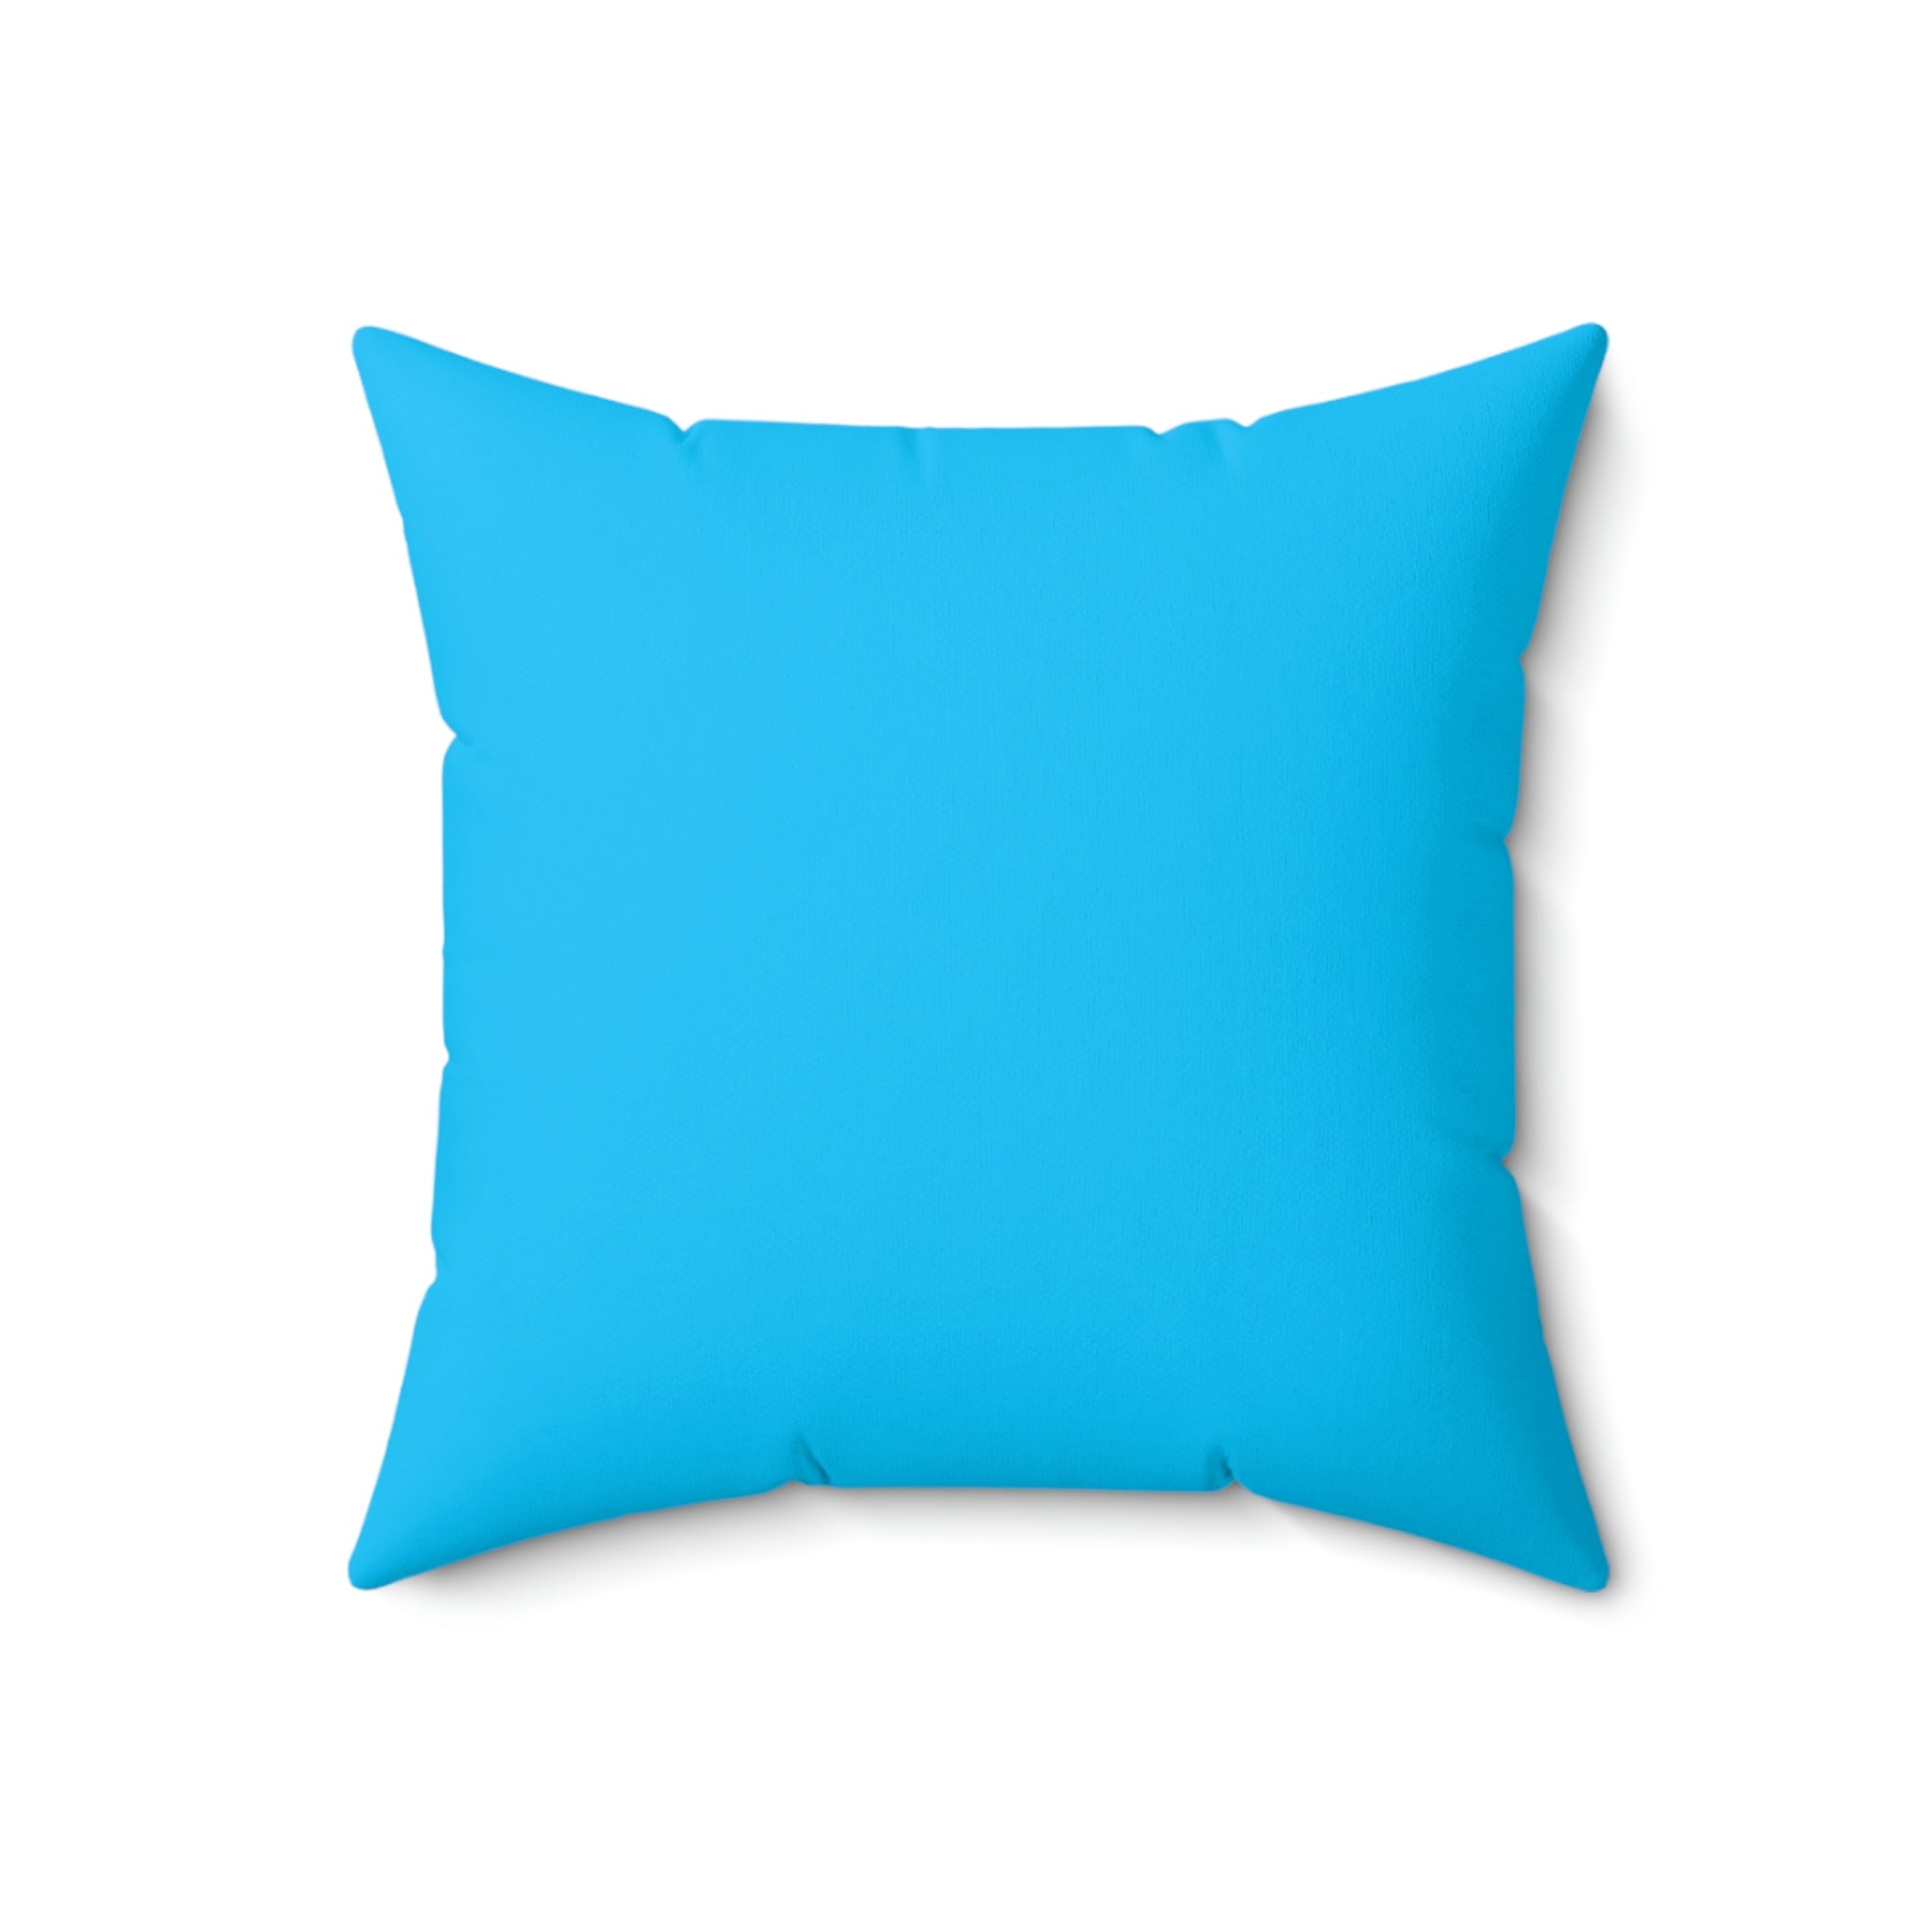 Spun Polyester Pillow Happy Face blue pattern m